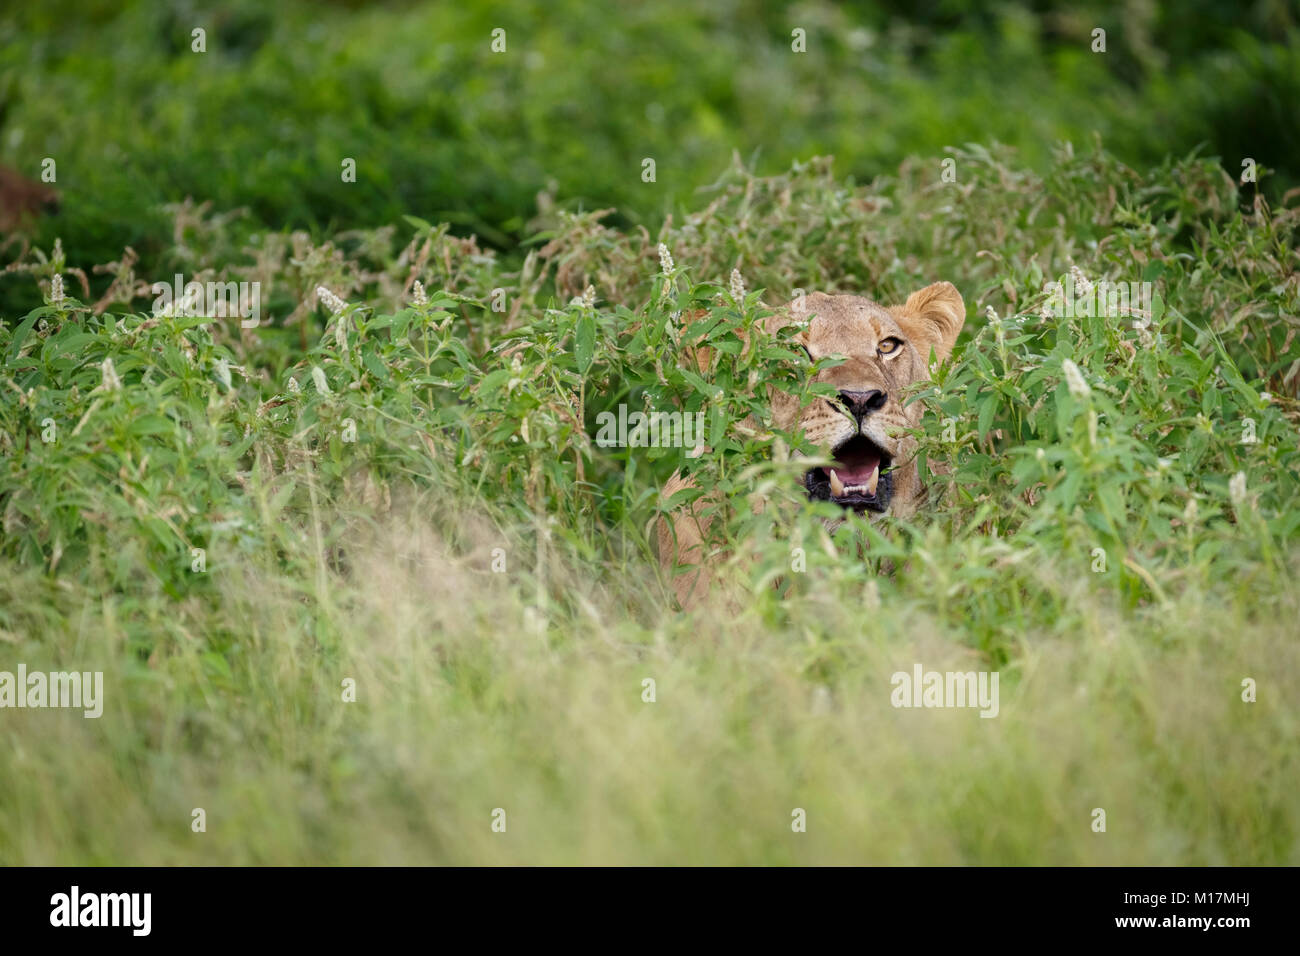 La lionne se cachant dans l'herbe verte longue tout en haletant et regardant avec réserve de gibier du Kalahari central au Botswana Banque D'Images